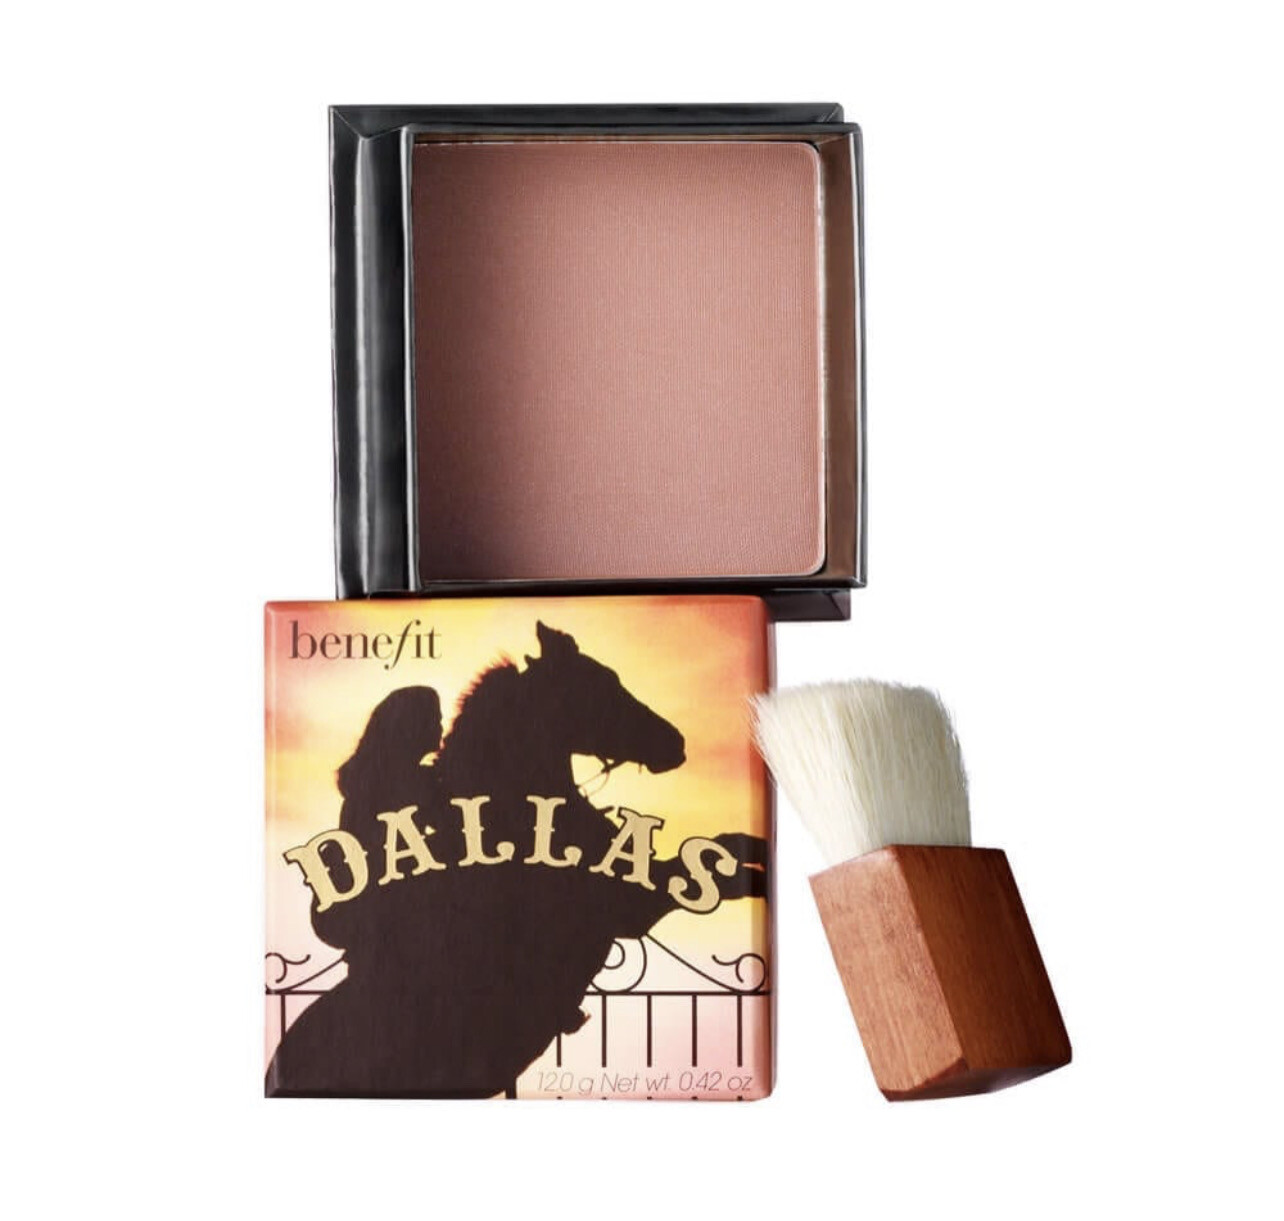 Benefit Cosmetics - Dallas Rosy Bronze Blush